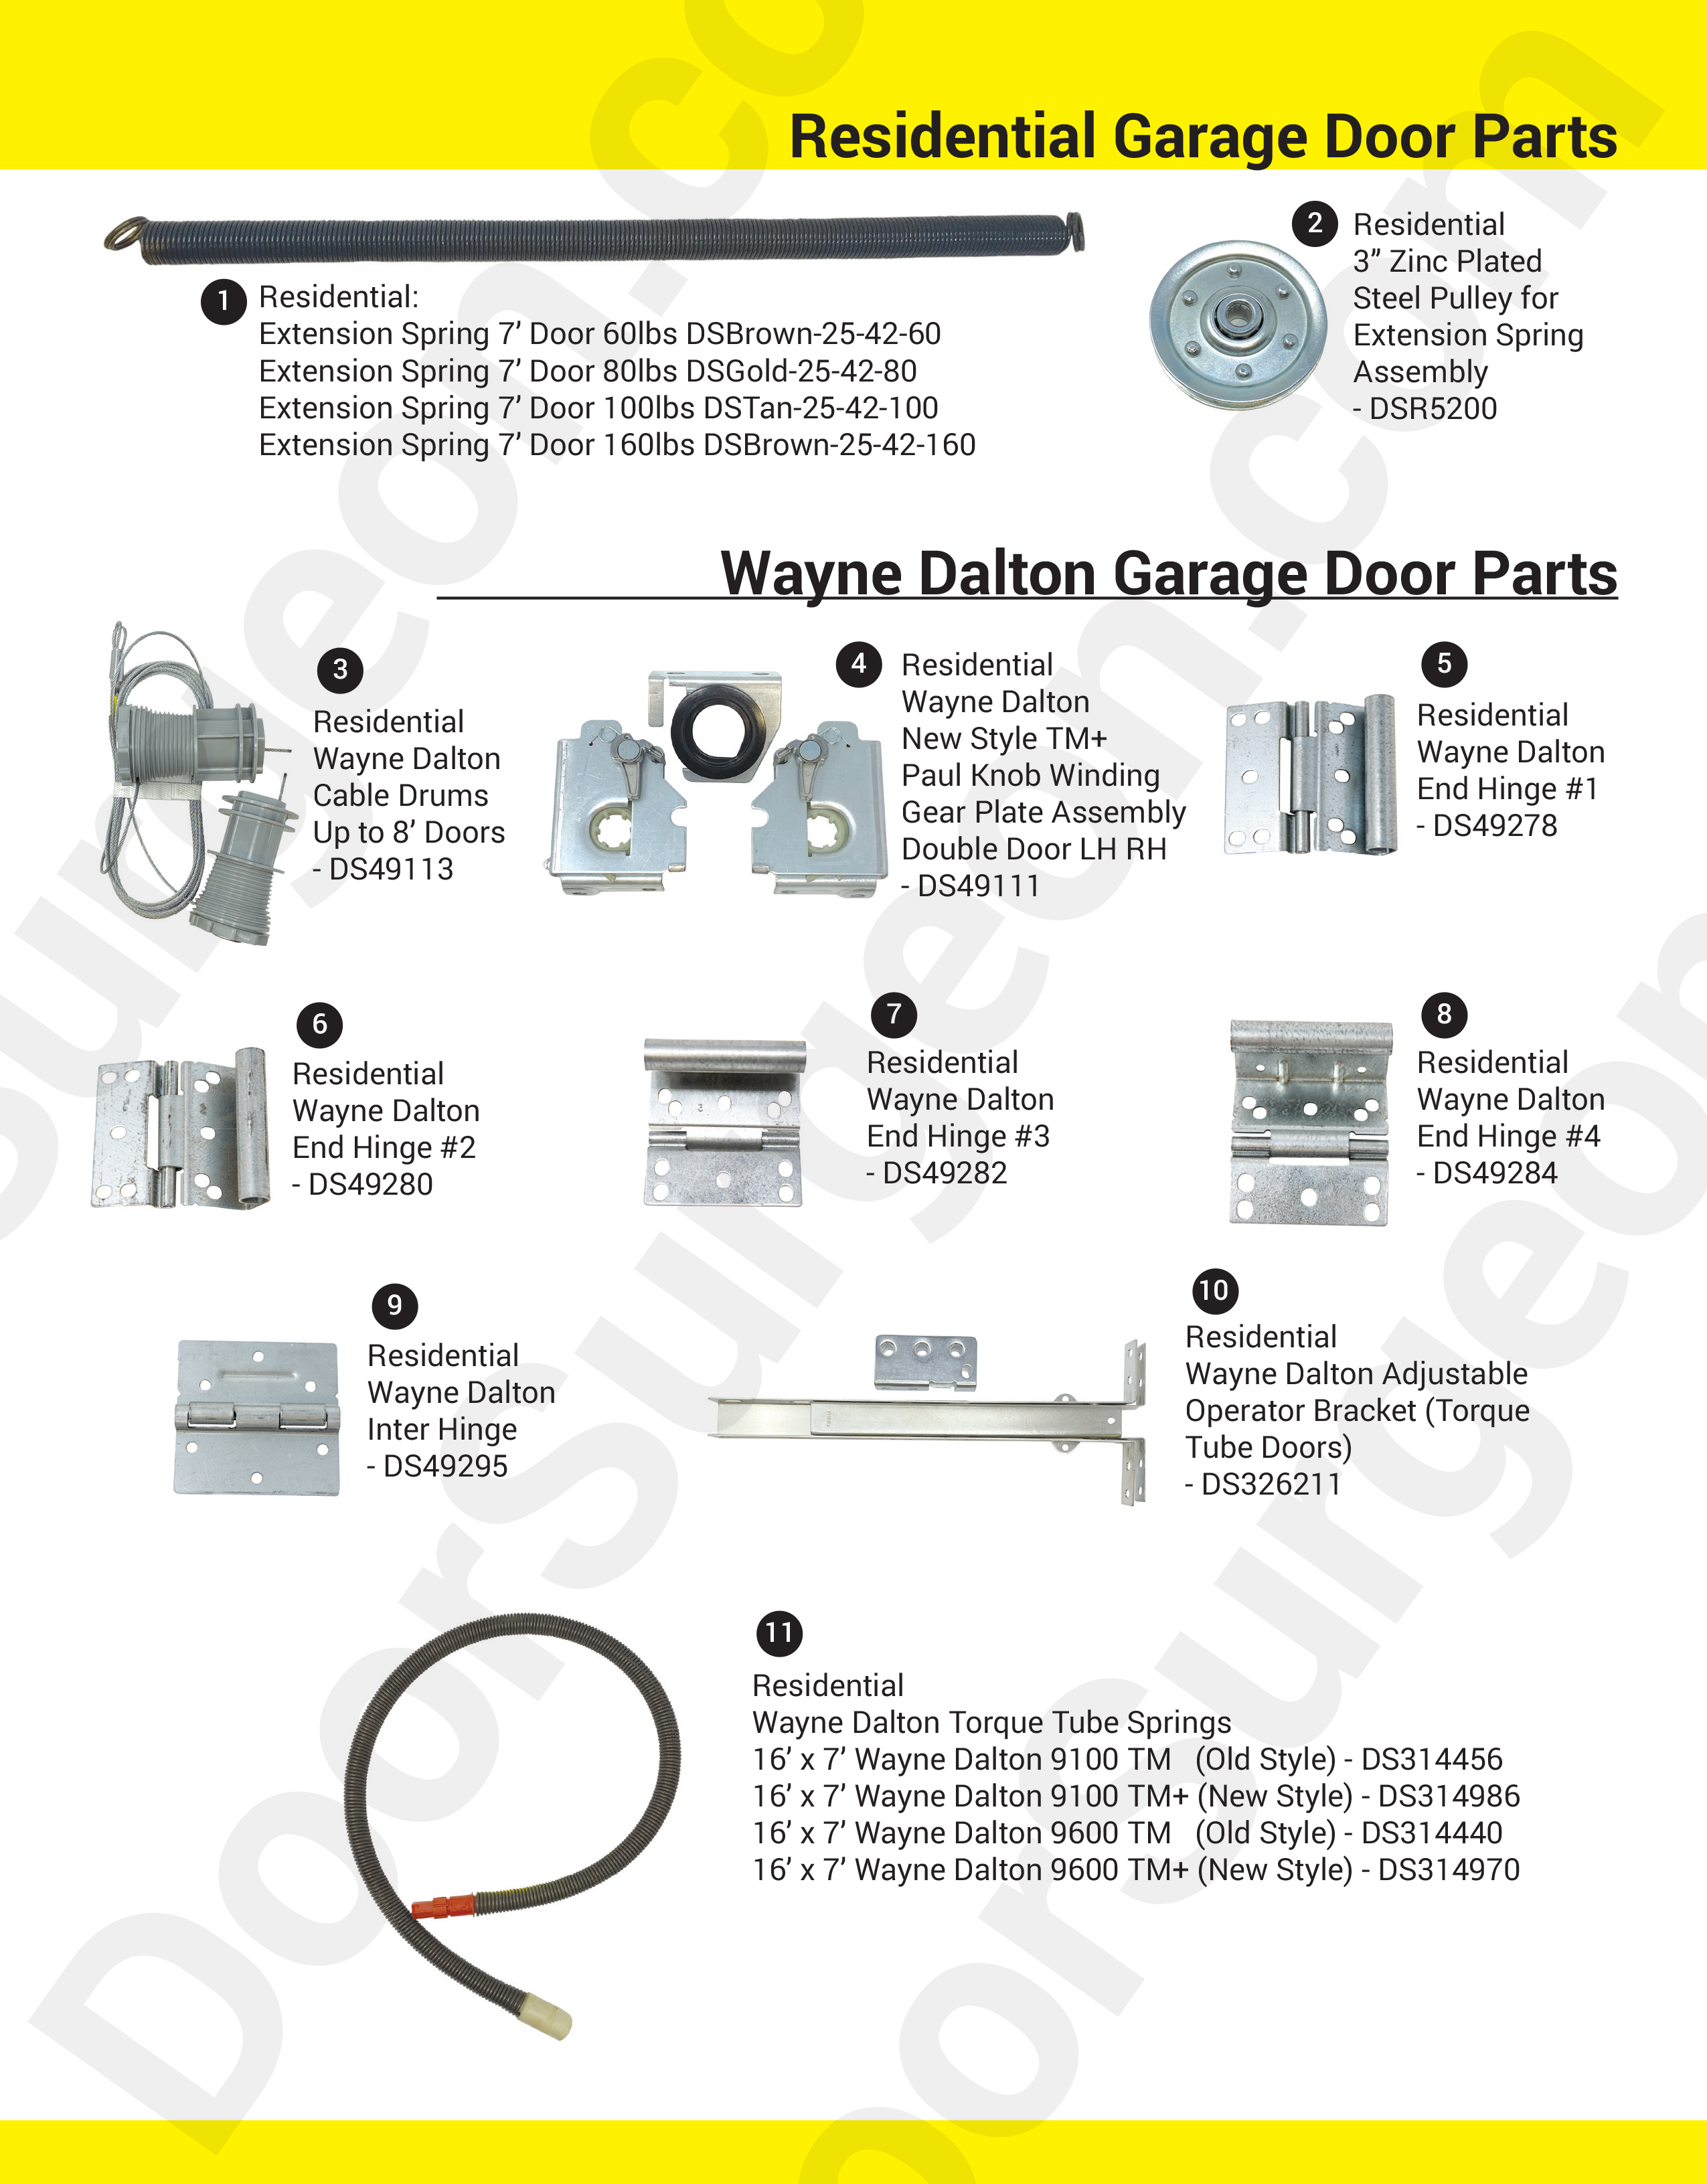 Door Surgeon replacement parts for residential garage doors Leduc.